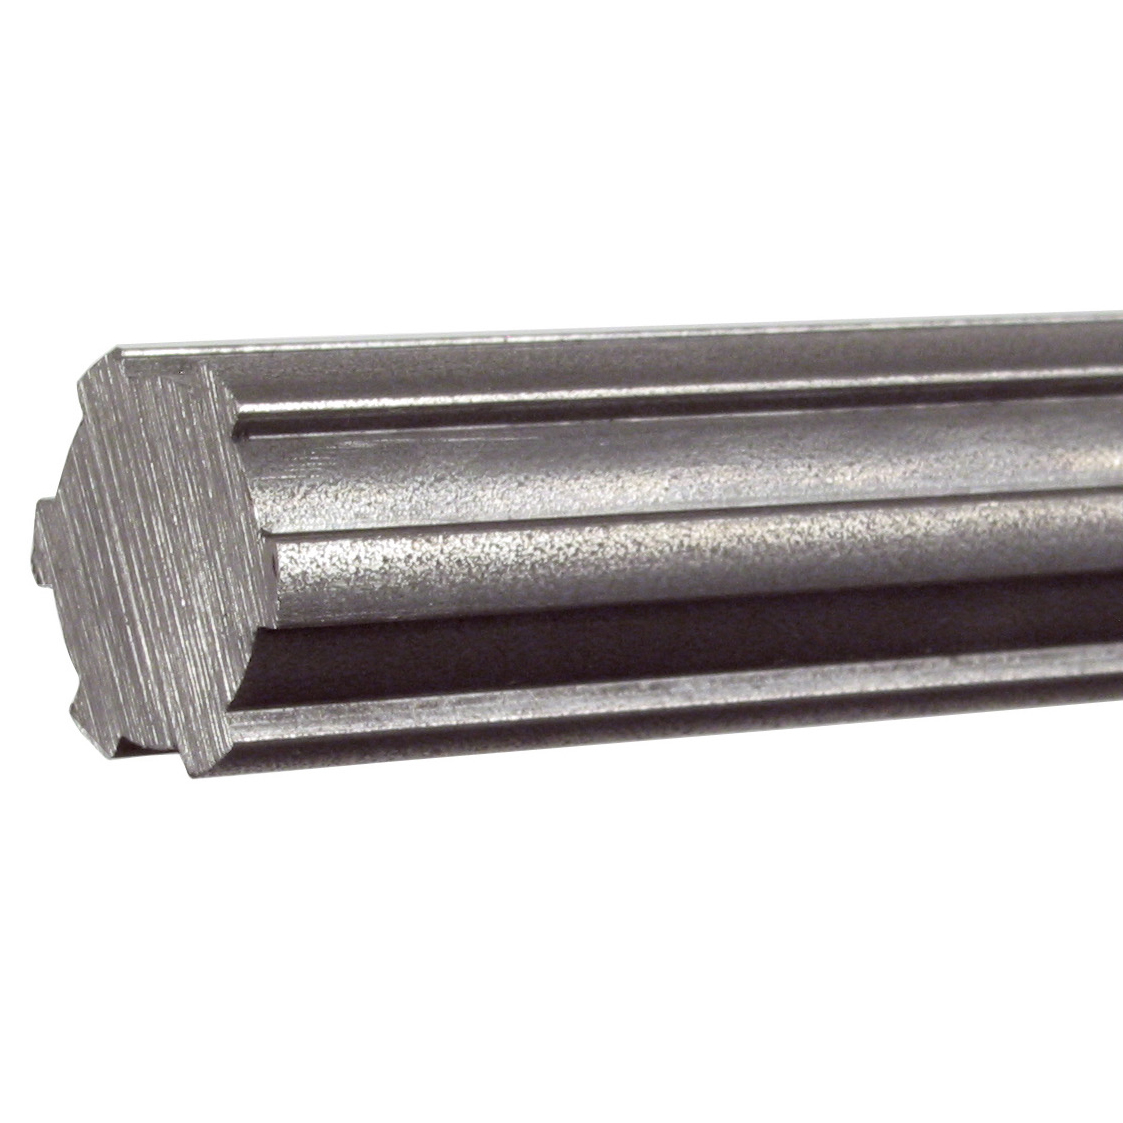 Steel splined shaft - Steel -  - 